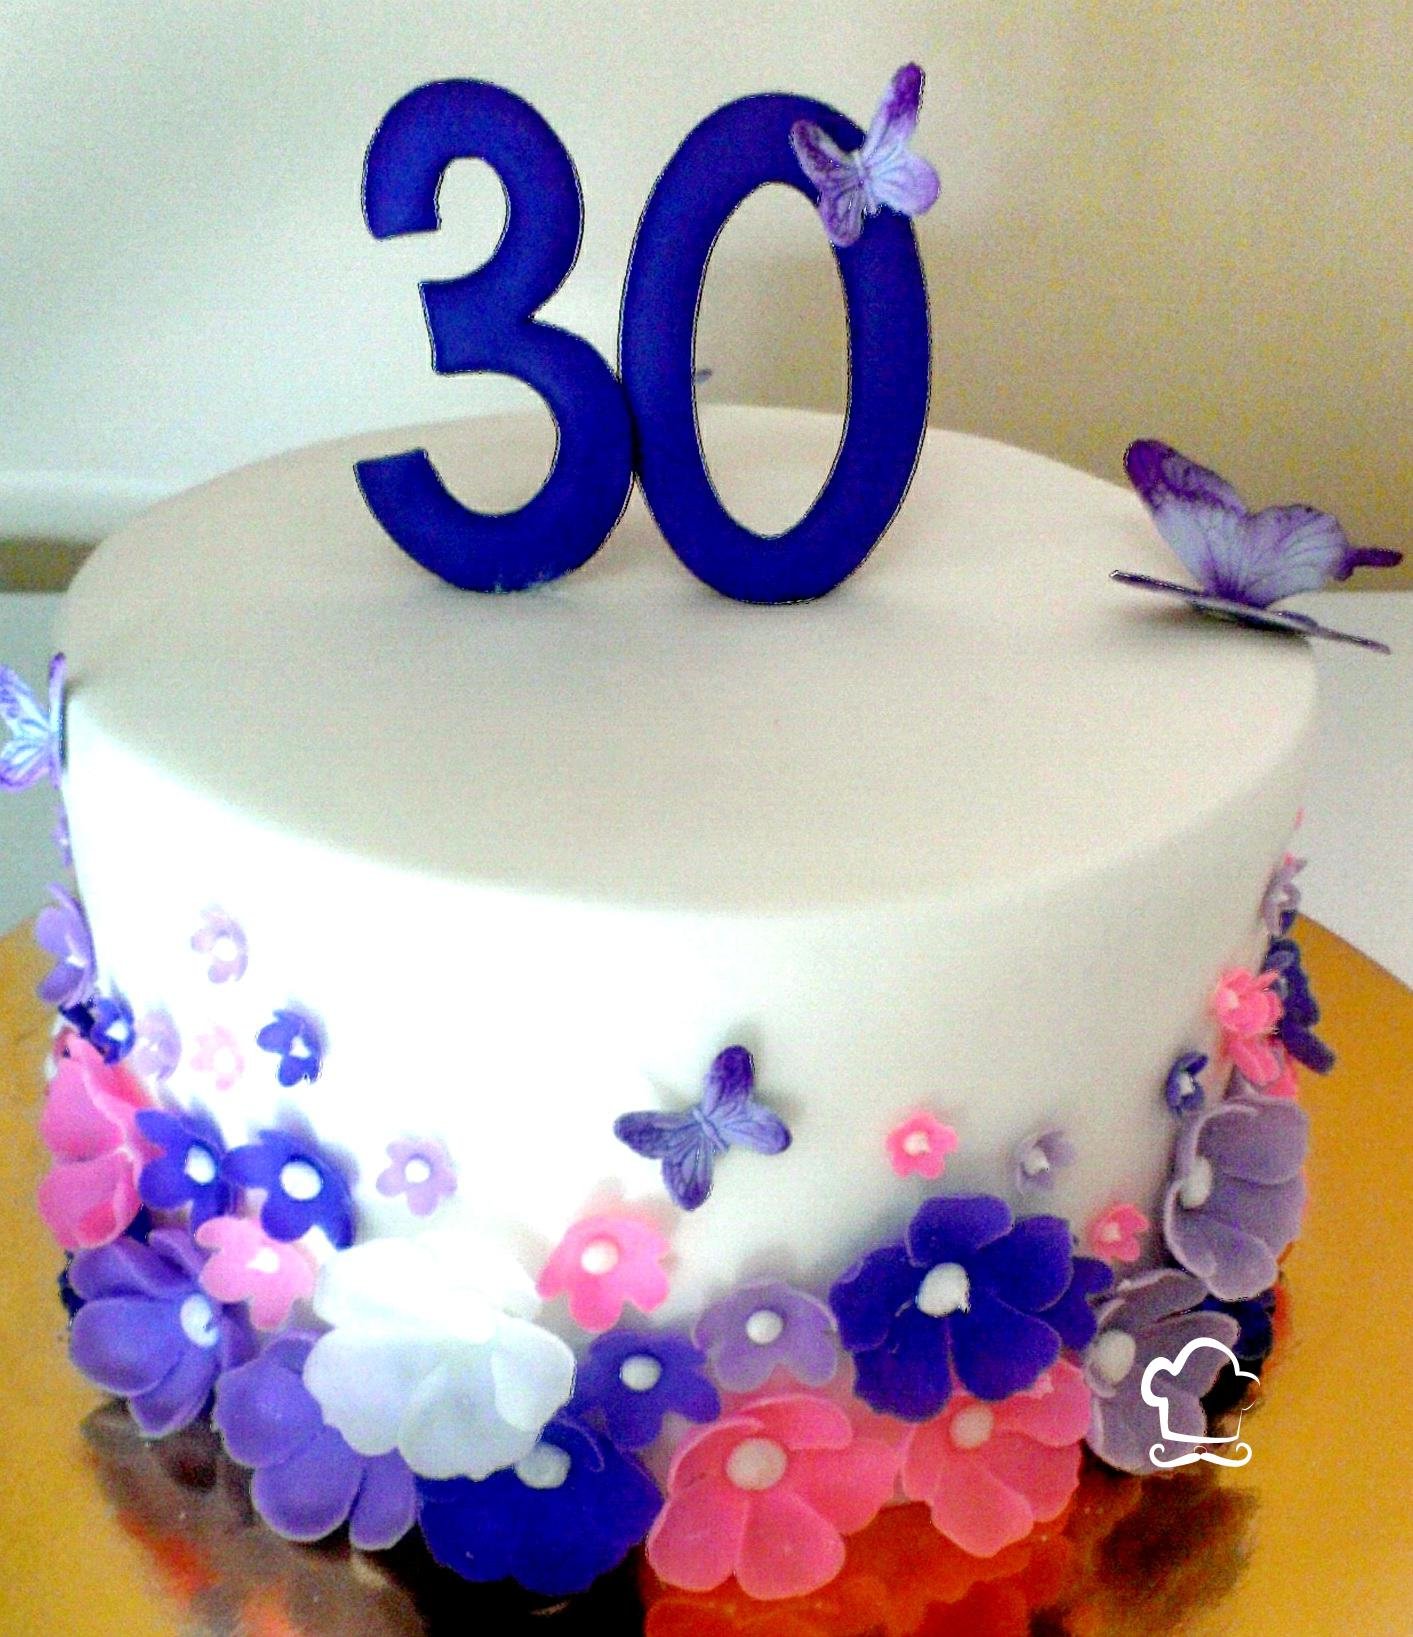 С днем рождения дочка 30. Красивый торт на день рождения 30 лет. Торт на день рождения 30 лет девушке. Торт 30 лет девушке красивый на день рождения. Украшение торта на юбилей 30 лет девушке.